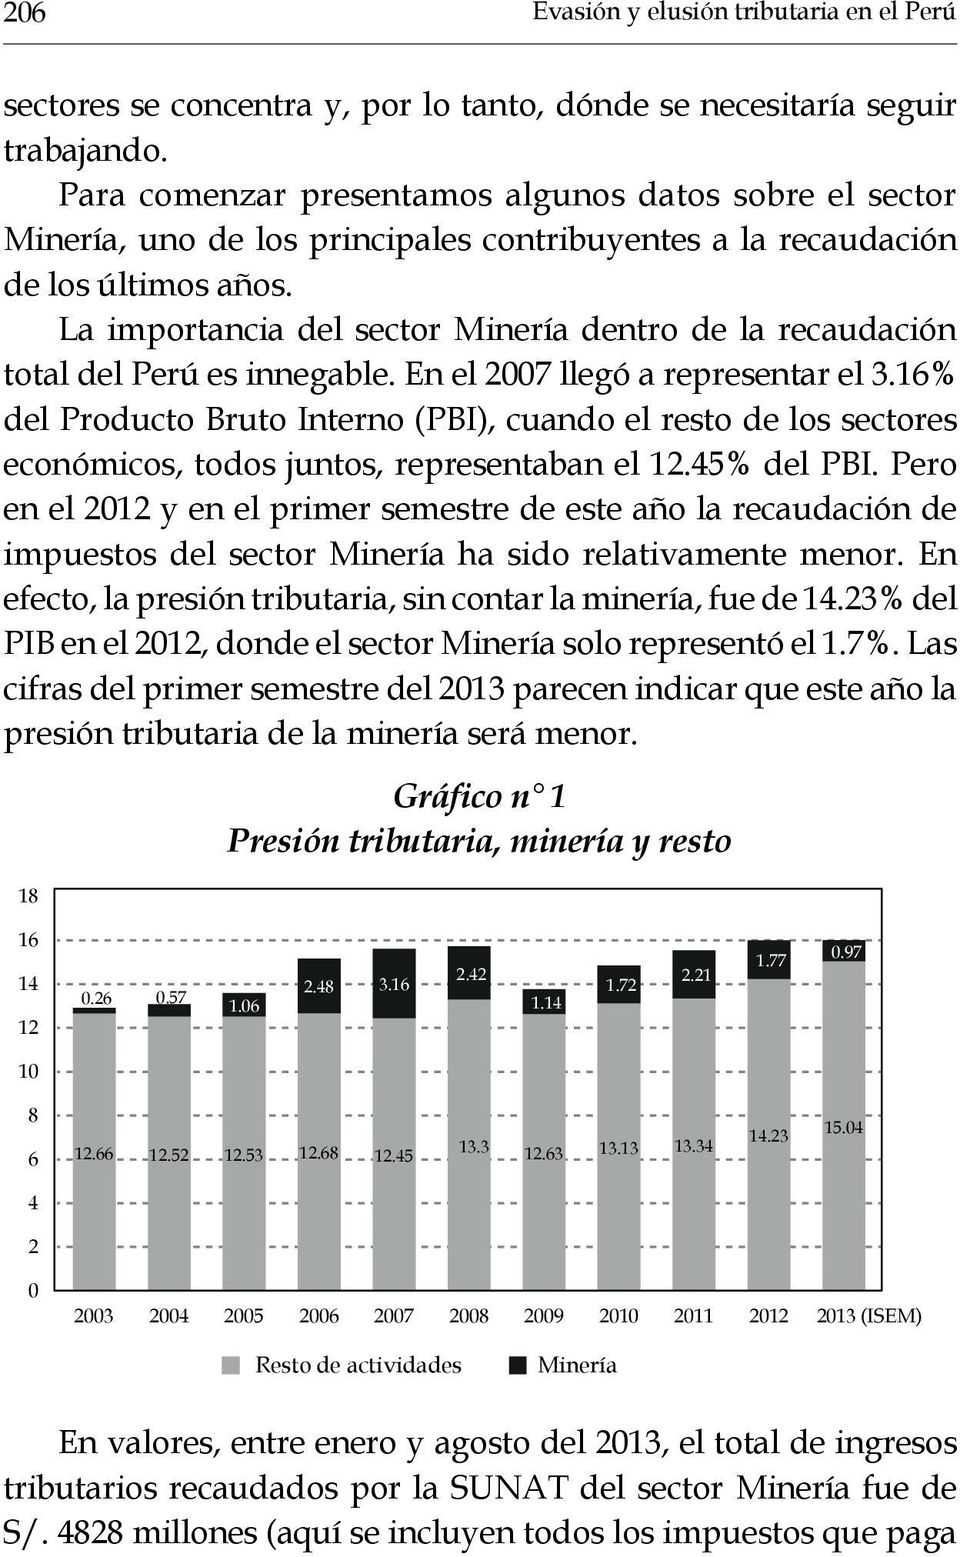 La importancia del sector Minería dentro de la recaudación total del Perú es innegable. En el 2007 llegó a representar el 3.